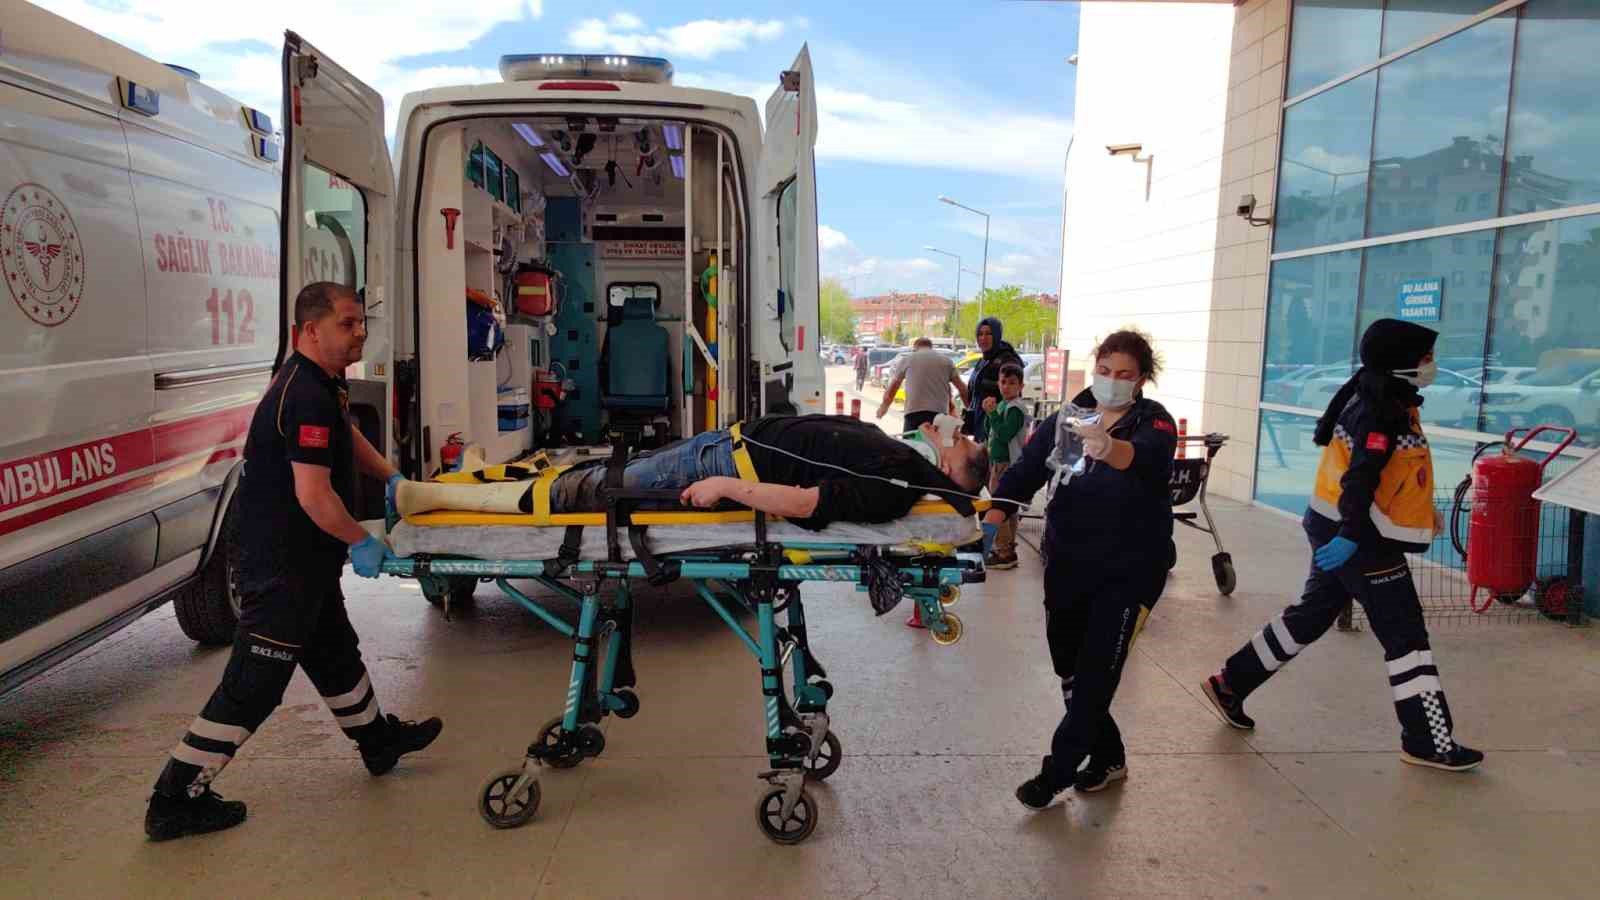 Bursa’da otomobil devrildi : 4 yaralı
